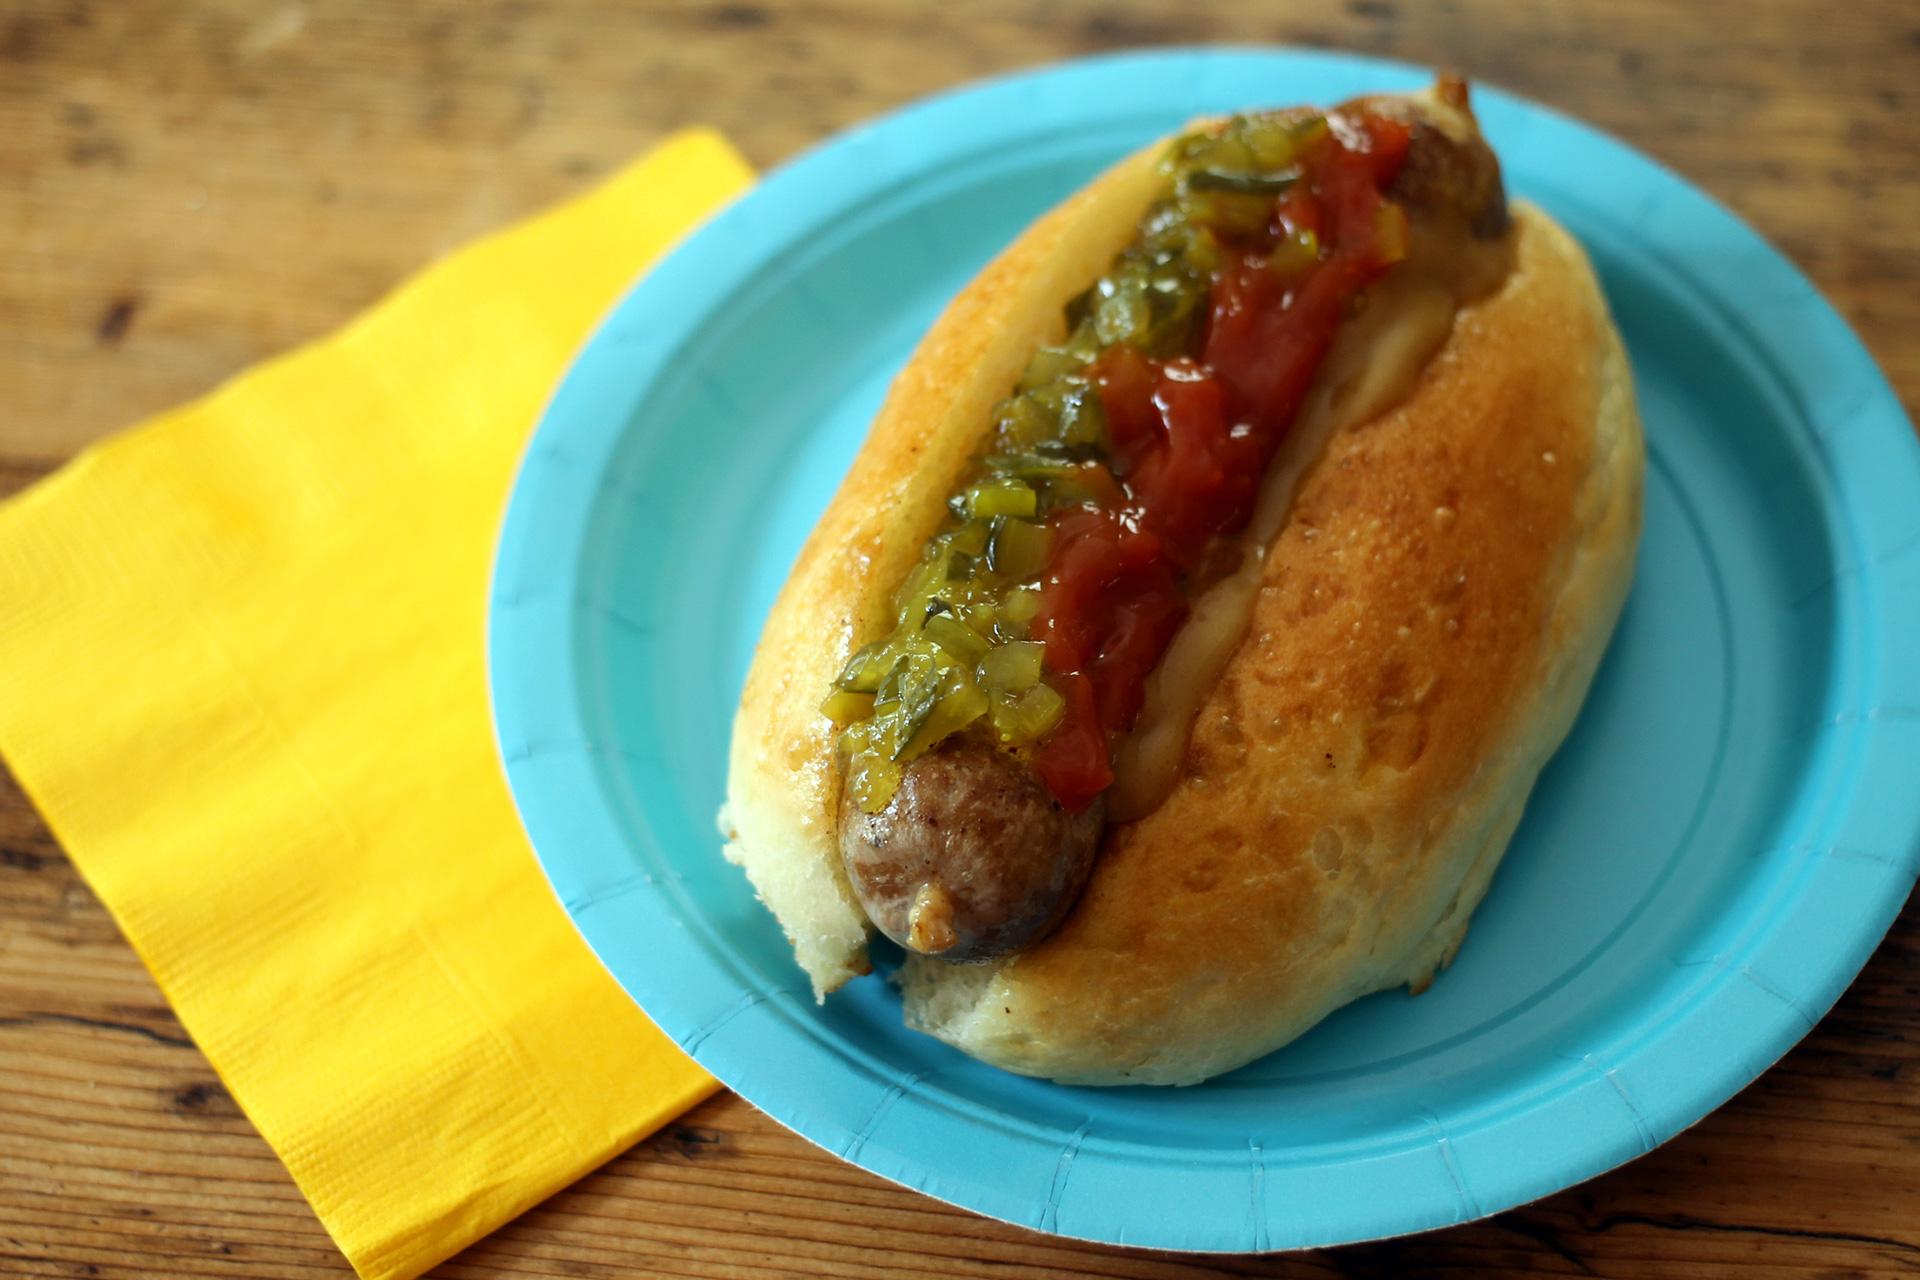 A homemade hot dog in a homemade hot dog bun.